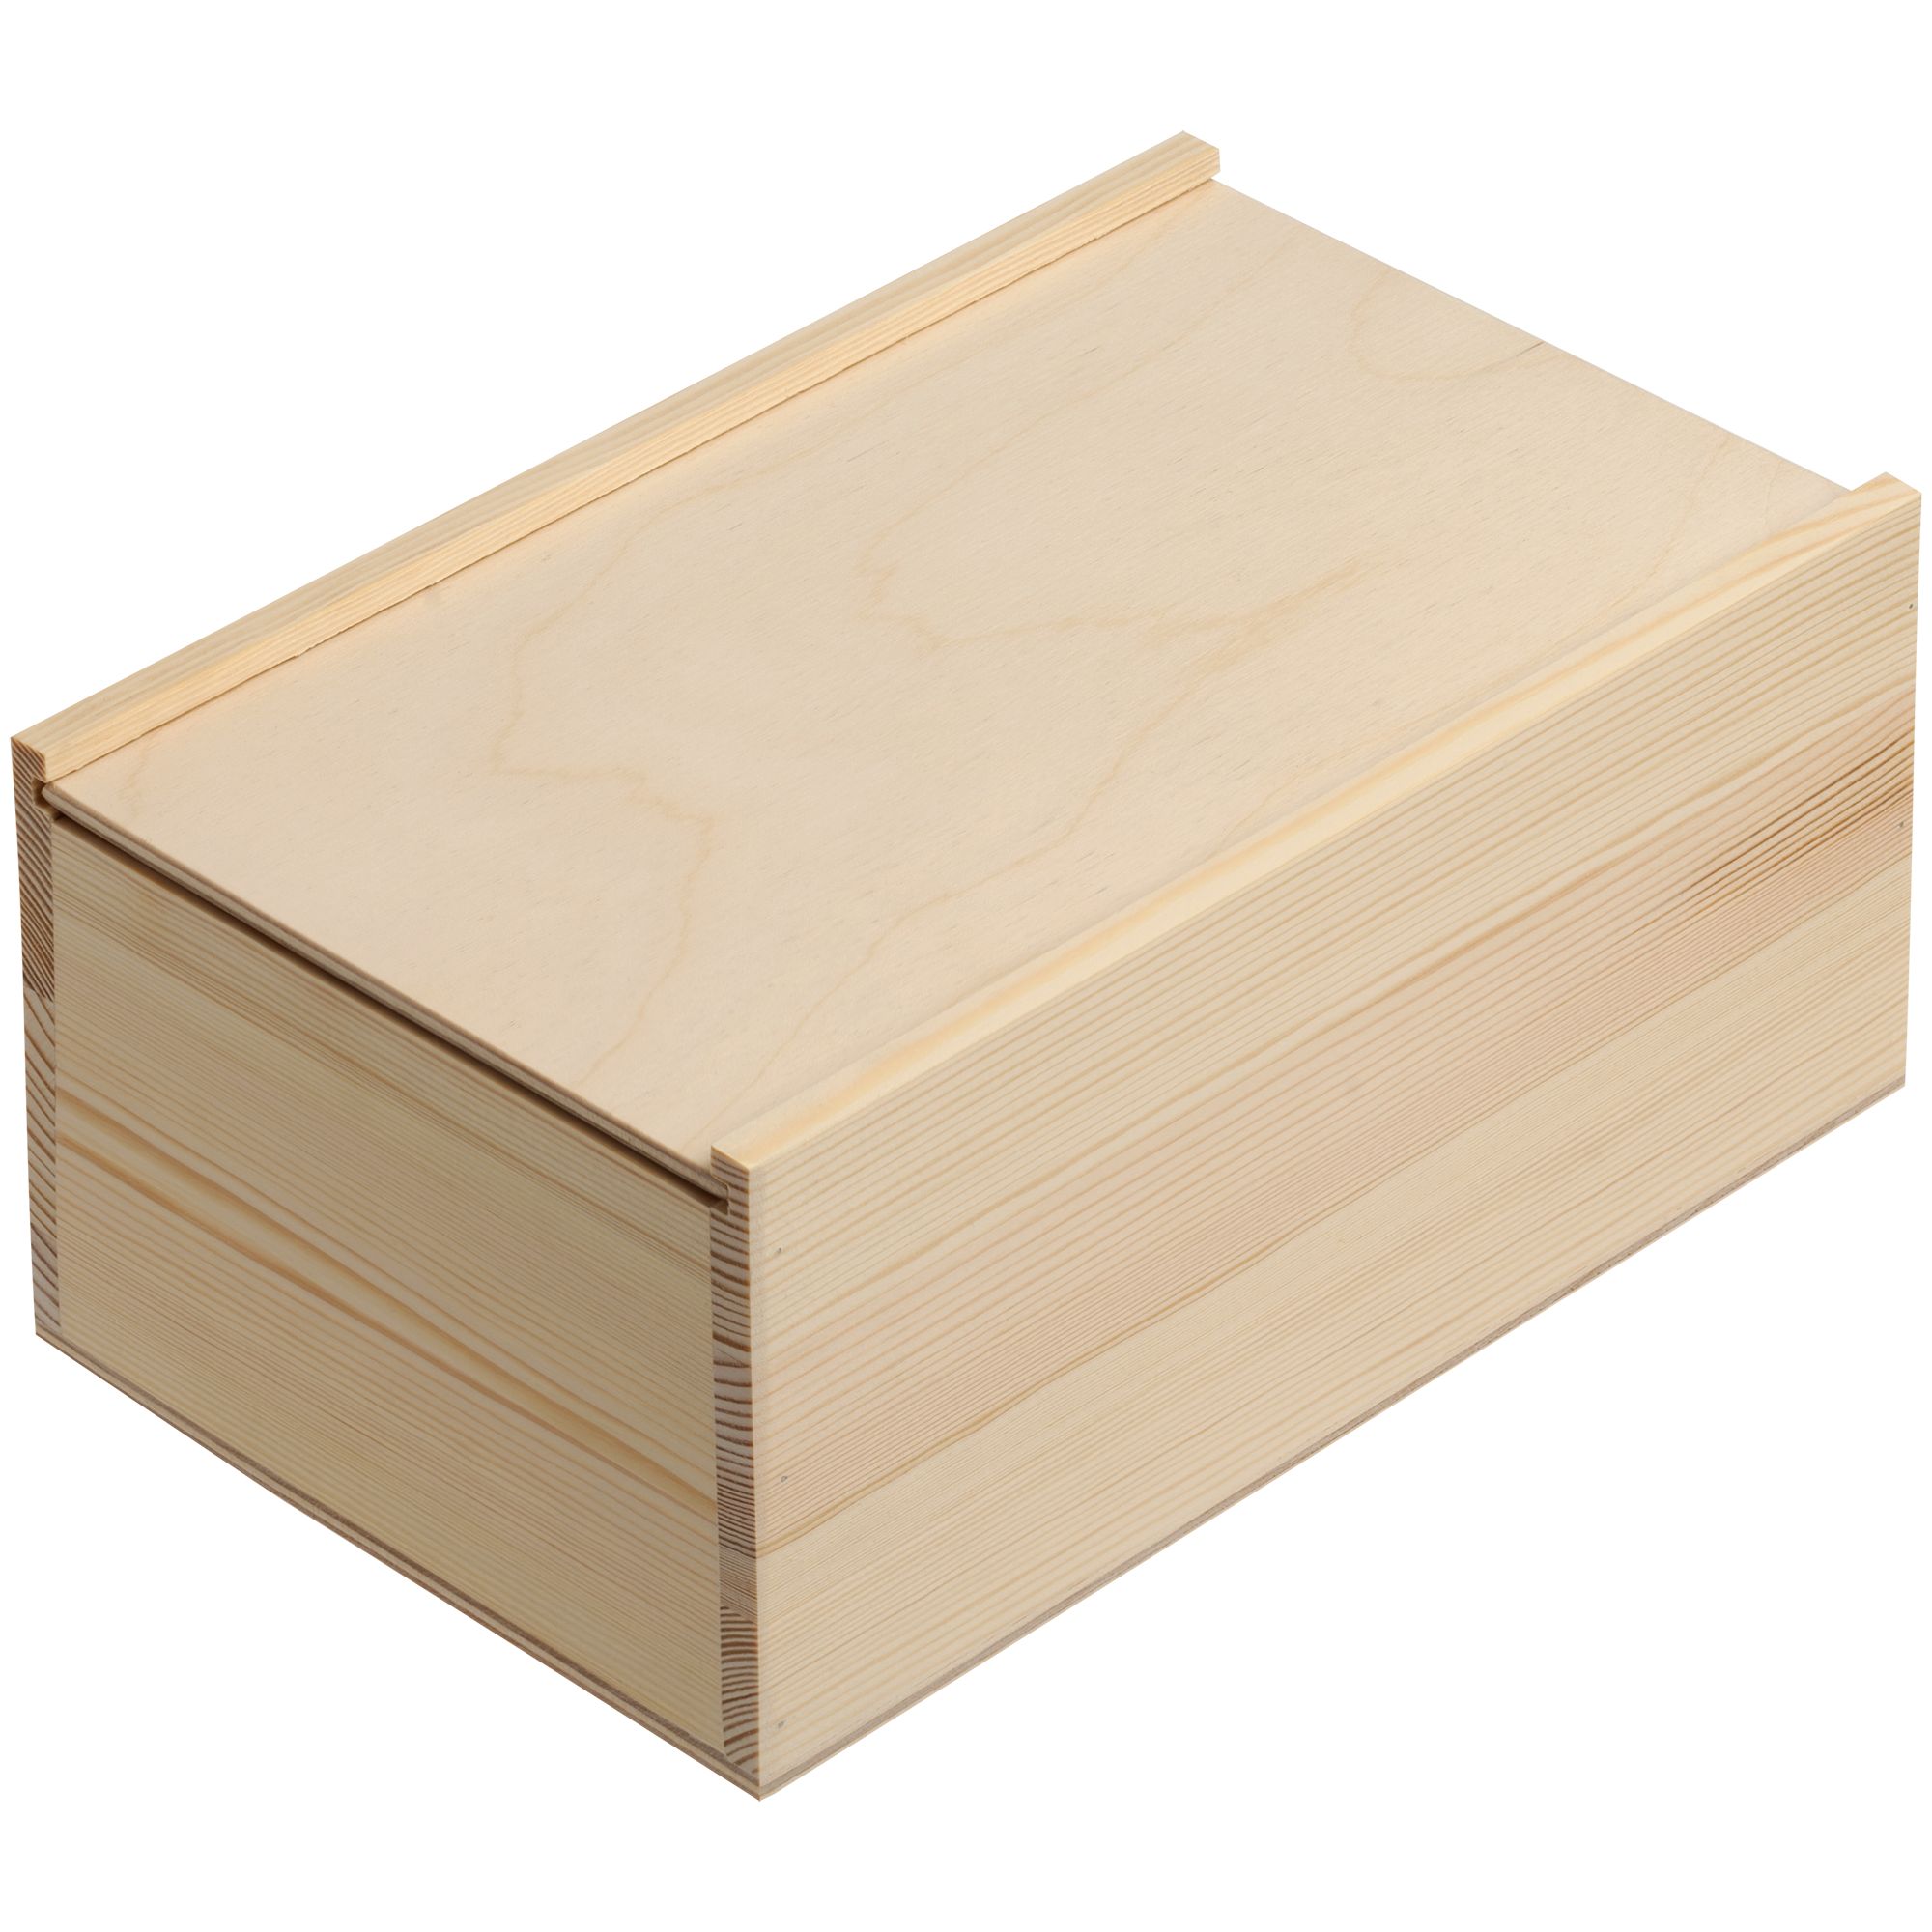 Деревянная коробка с крышкой. Коробка деревянная. Деревянный ящик. Деревянные коробочки для подарков. Деревянные подарочные коробки.